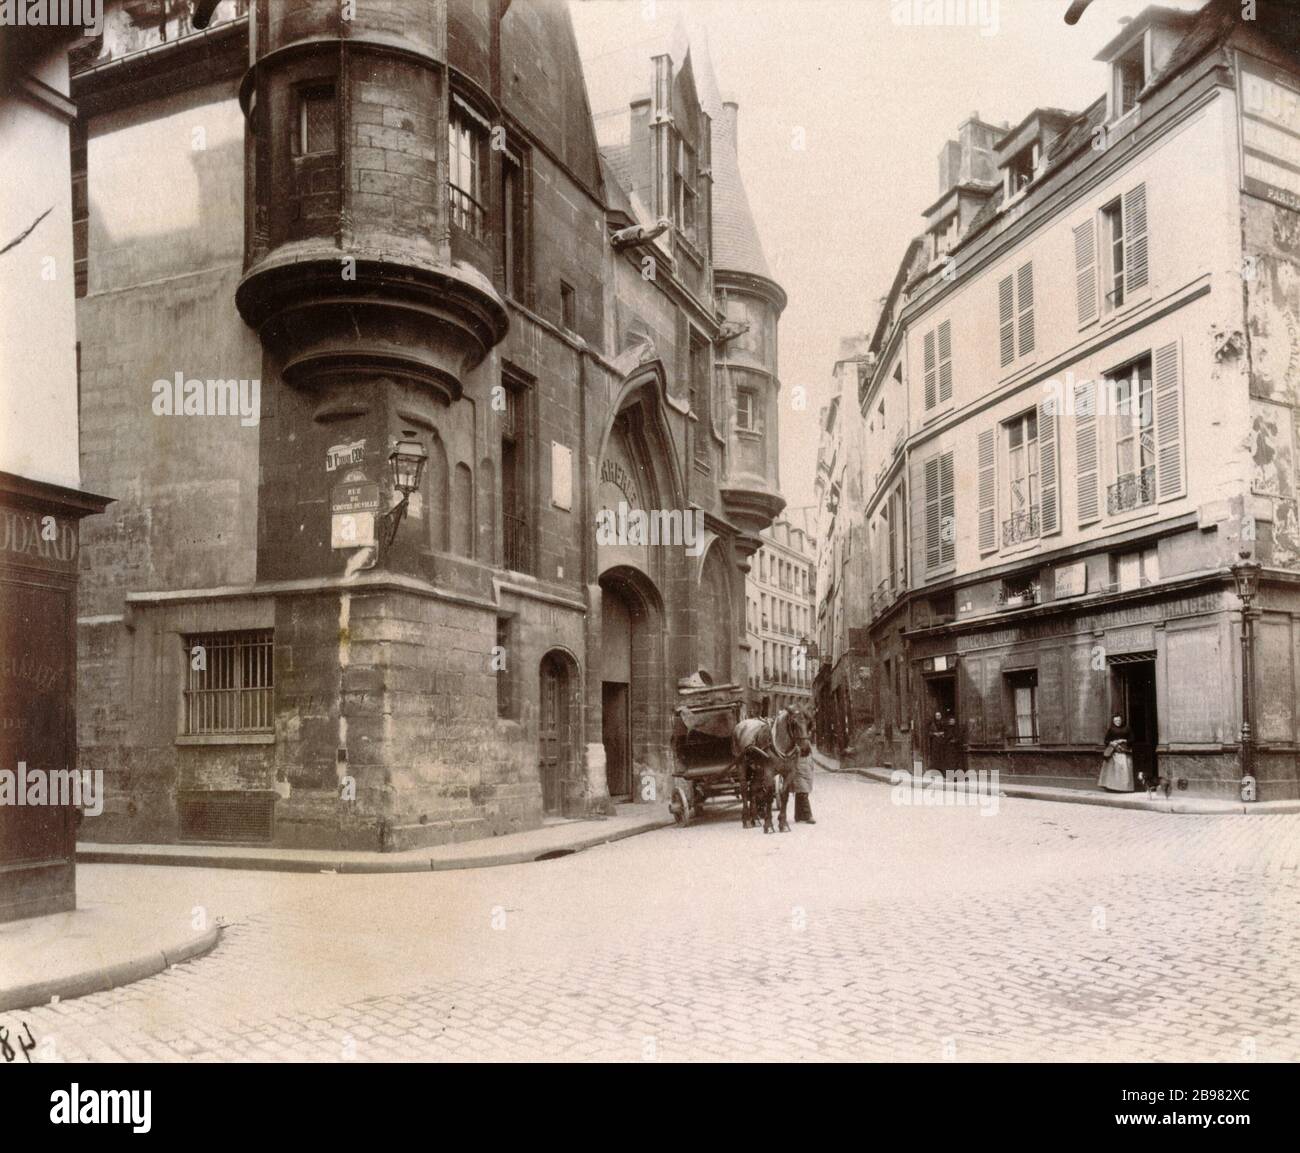 HOTEL DE SENS Hôtel de Sens, 1, rue du Figuier. Paris, Vers 1910. Photographie d'Eugène Atget (1857-1927). Paris, musée Carnavalet. Stockfoto